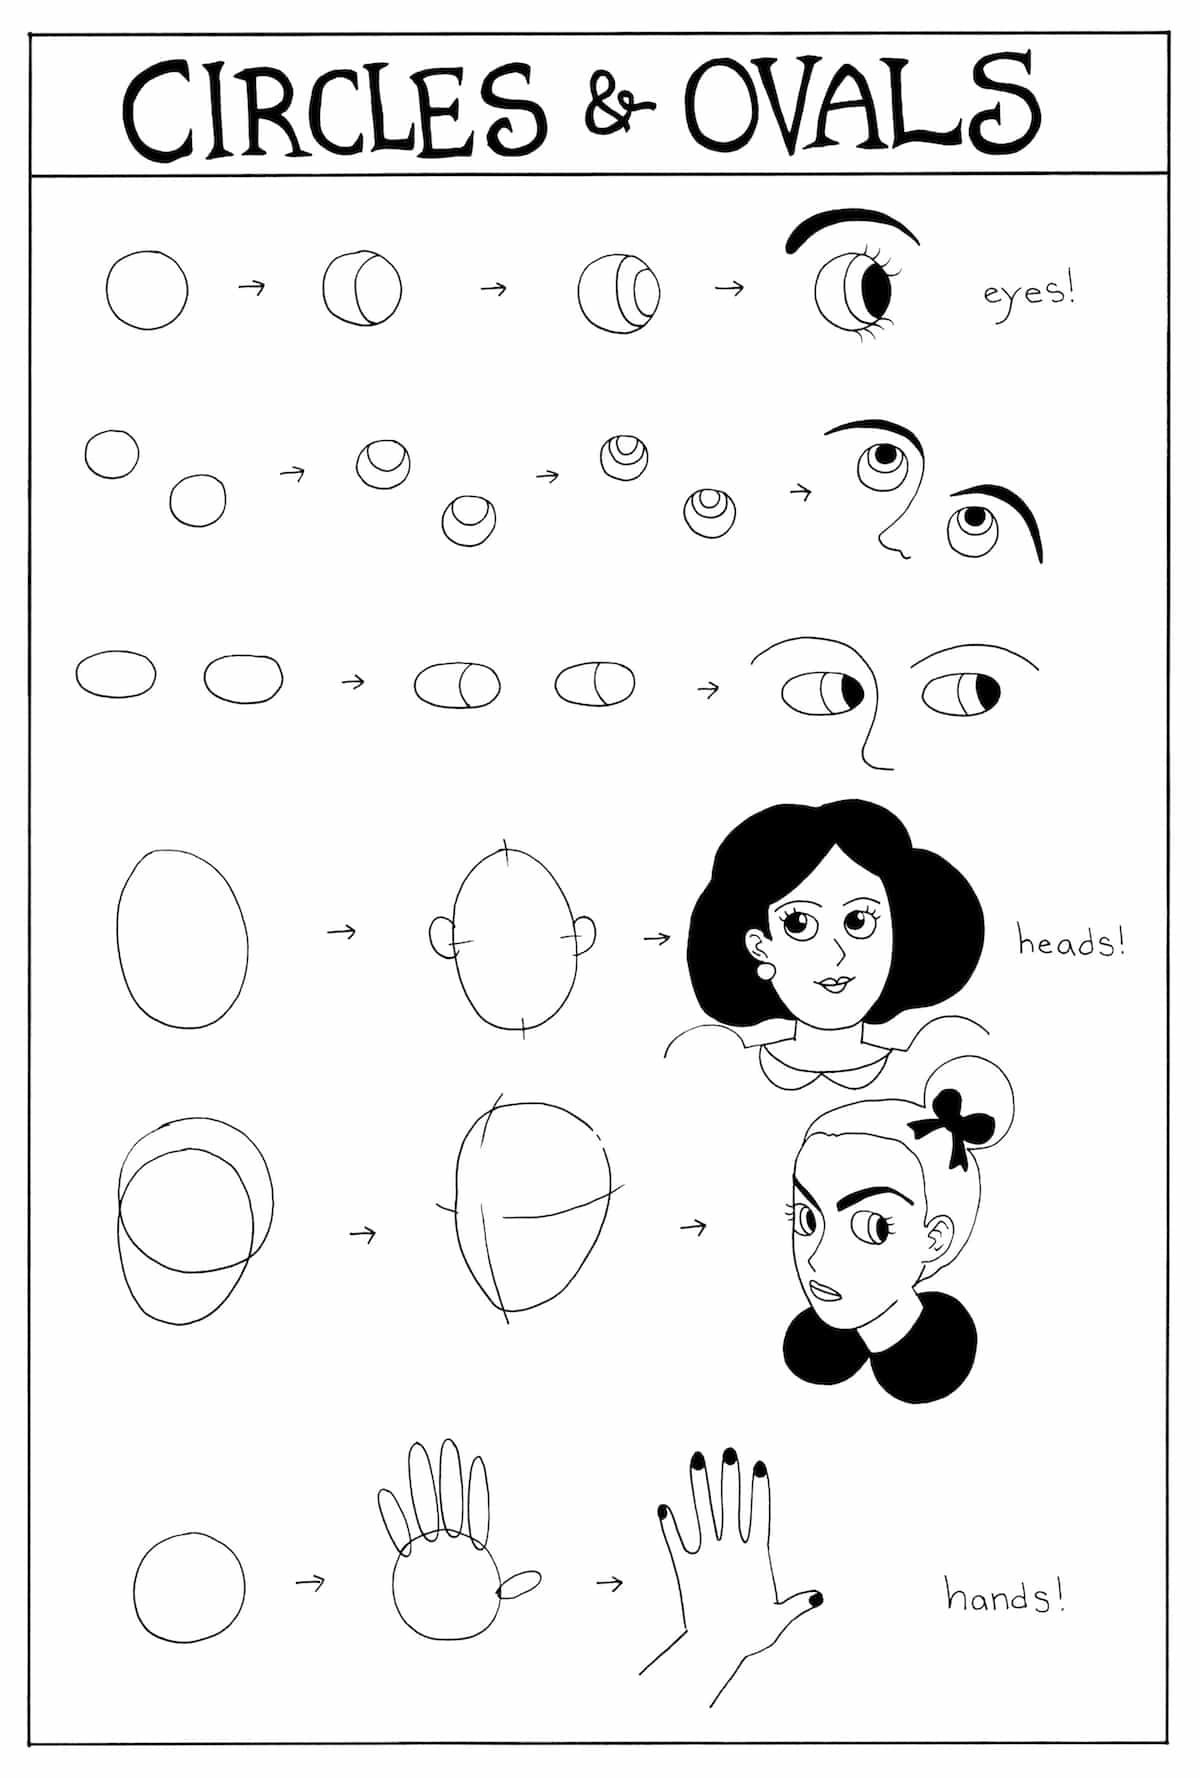 cómo dibujar personas y caricaturas con círculos